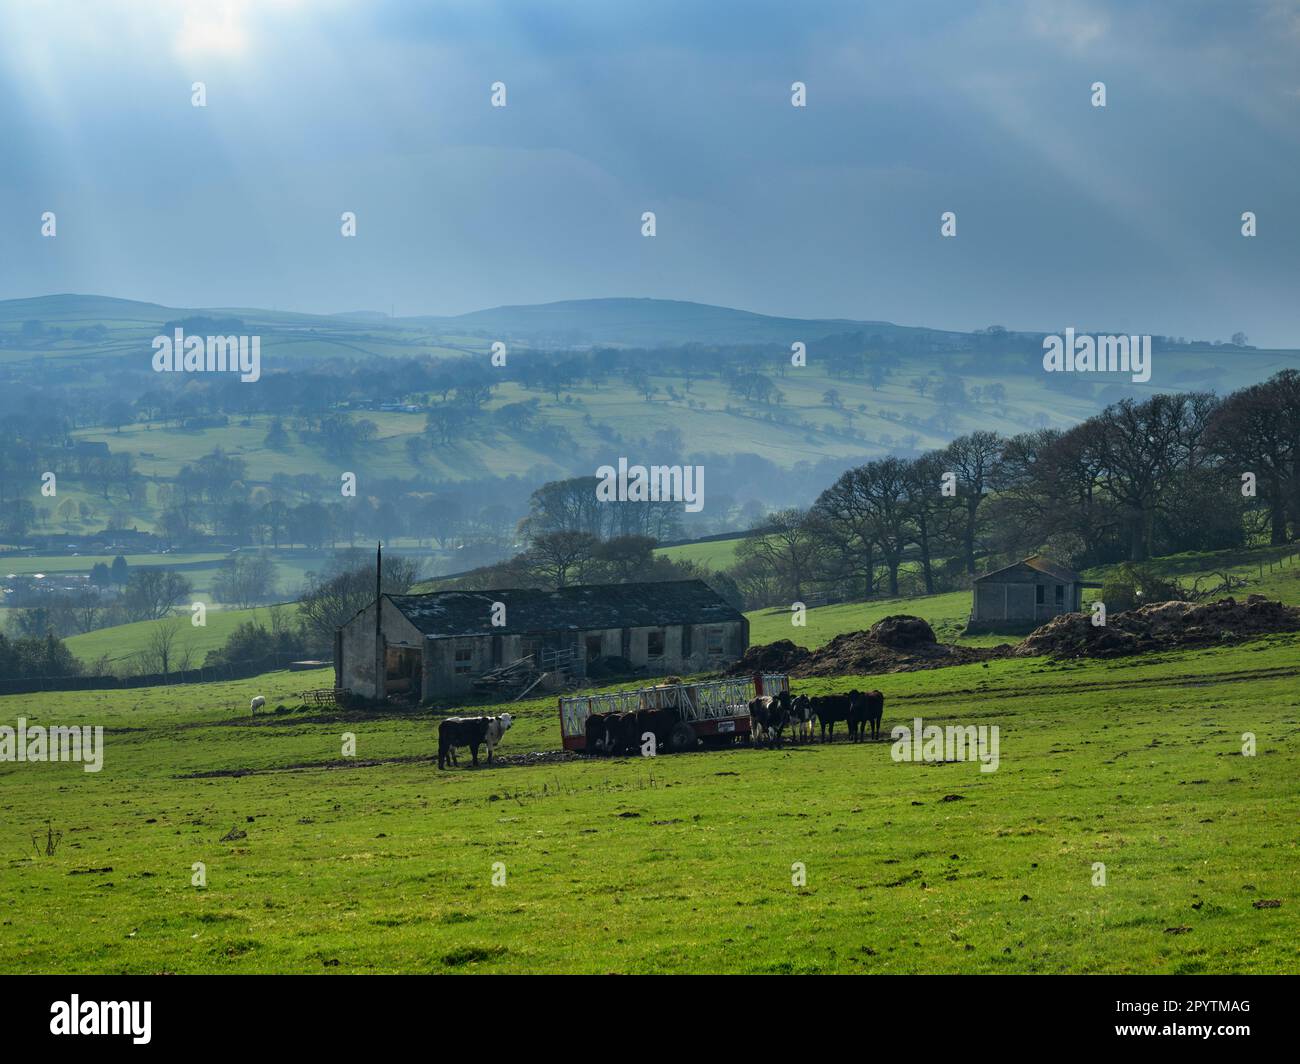 Wunderschönes malerisches Tal (Viehfütterung im Wohnwagen, sonnenbeleuchtete Hügel, isolierte Gebäude, Sonnenstrahlen) - Addingham, West Yorkshire, England, Großbritannien. Stockfoto